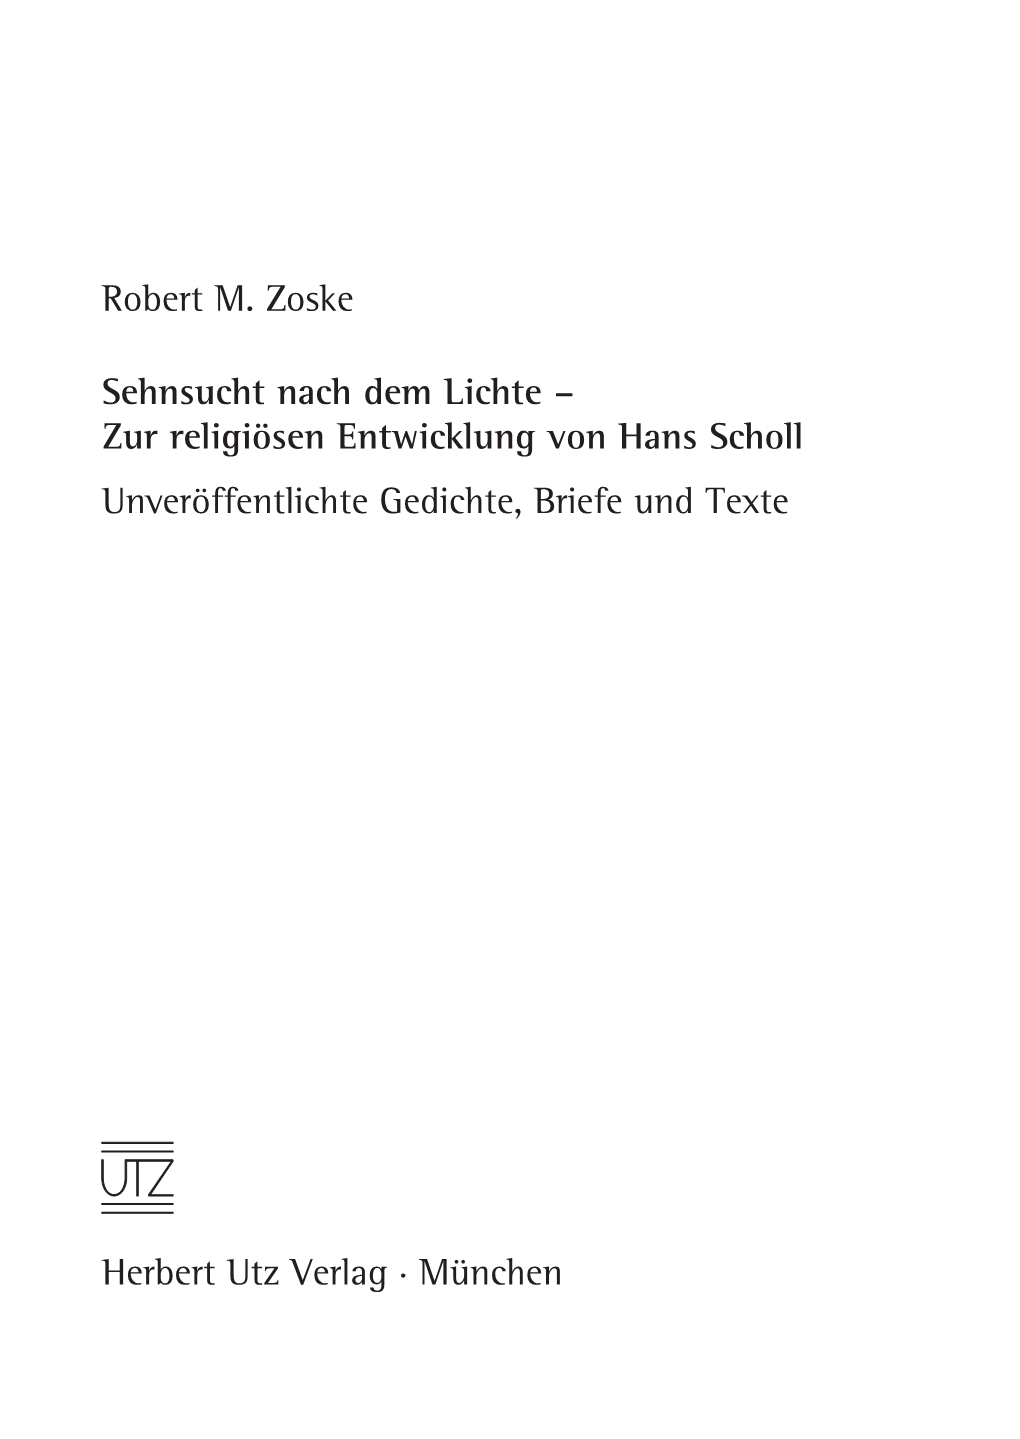 Zur Religiösen Entwicklung Von Hans Scholl Unveröffentlichte Gedichte, Briefe Und Texte